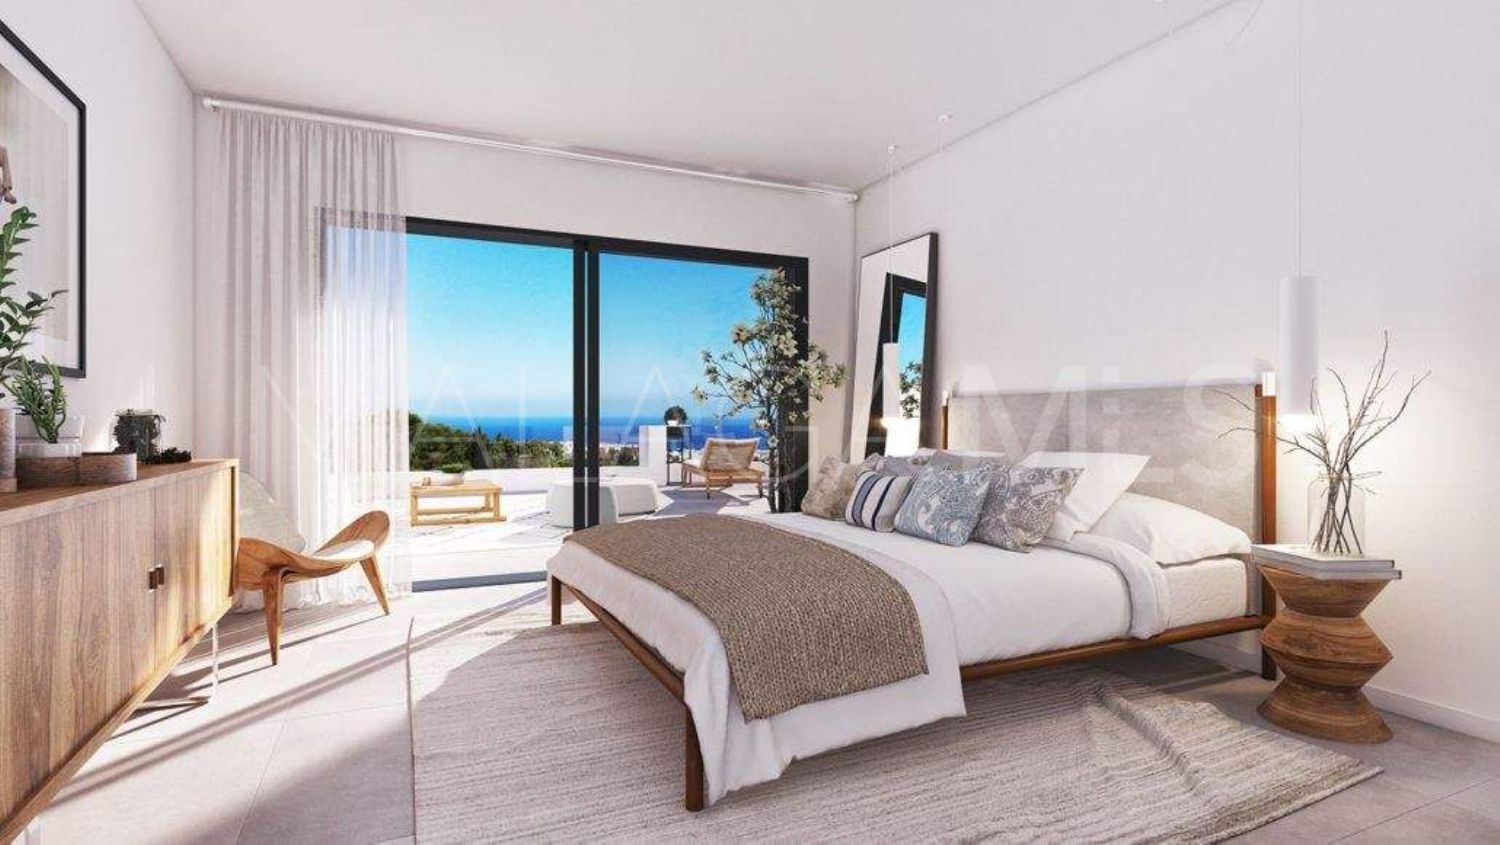 Buy atico in Los Reales - Sierra Estepona with 2 bedrooms